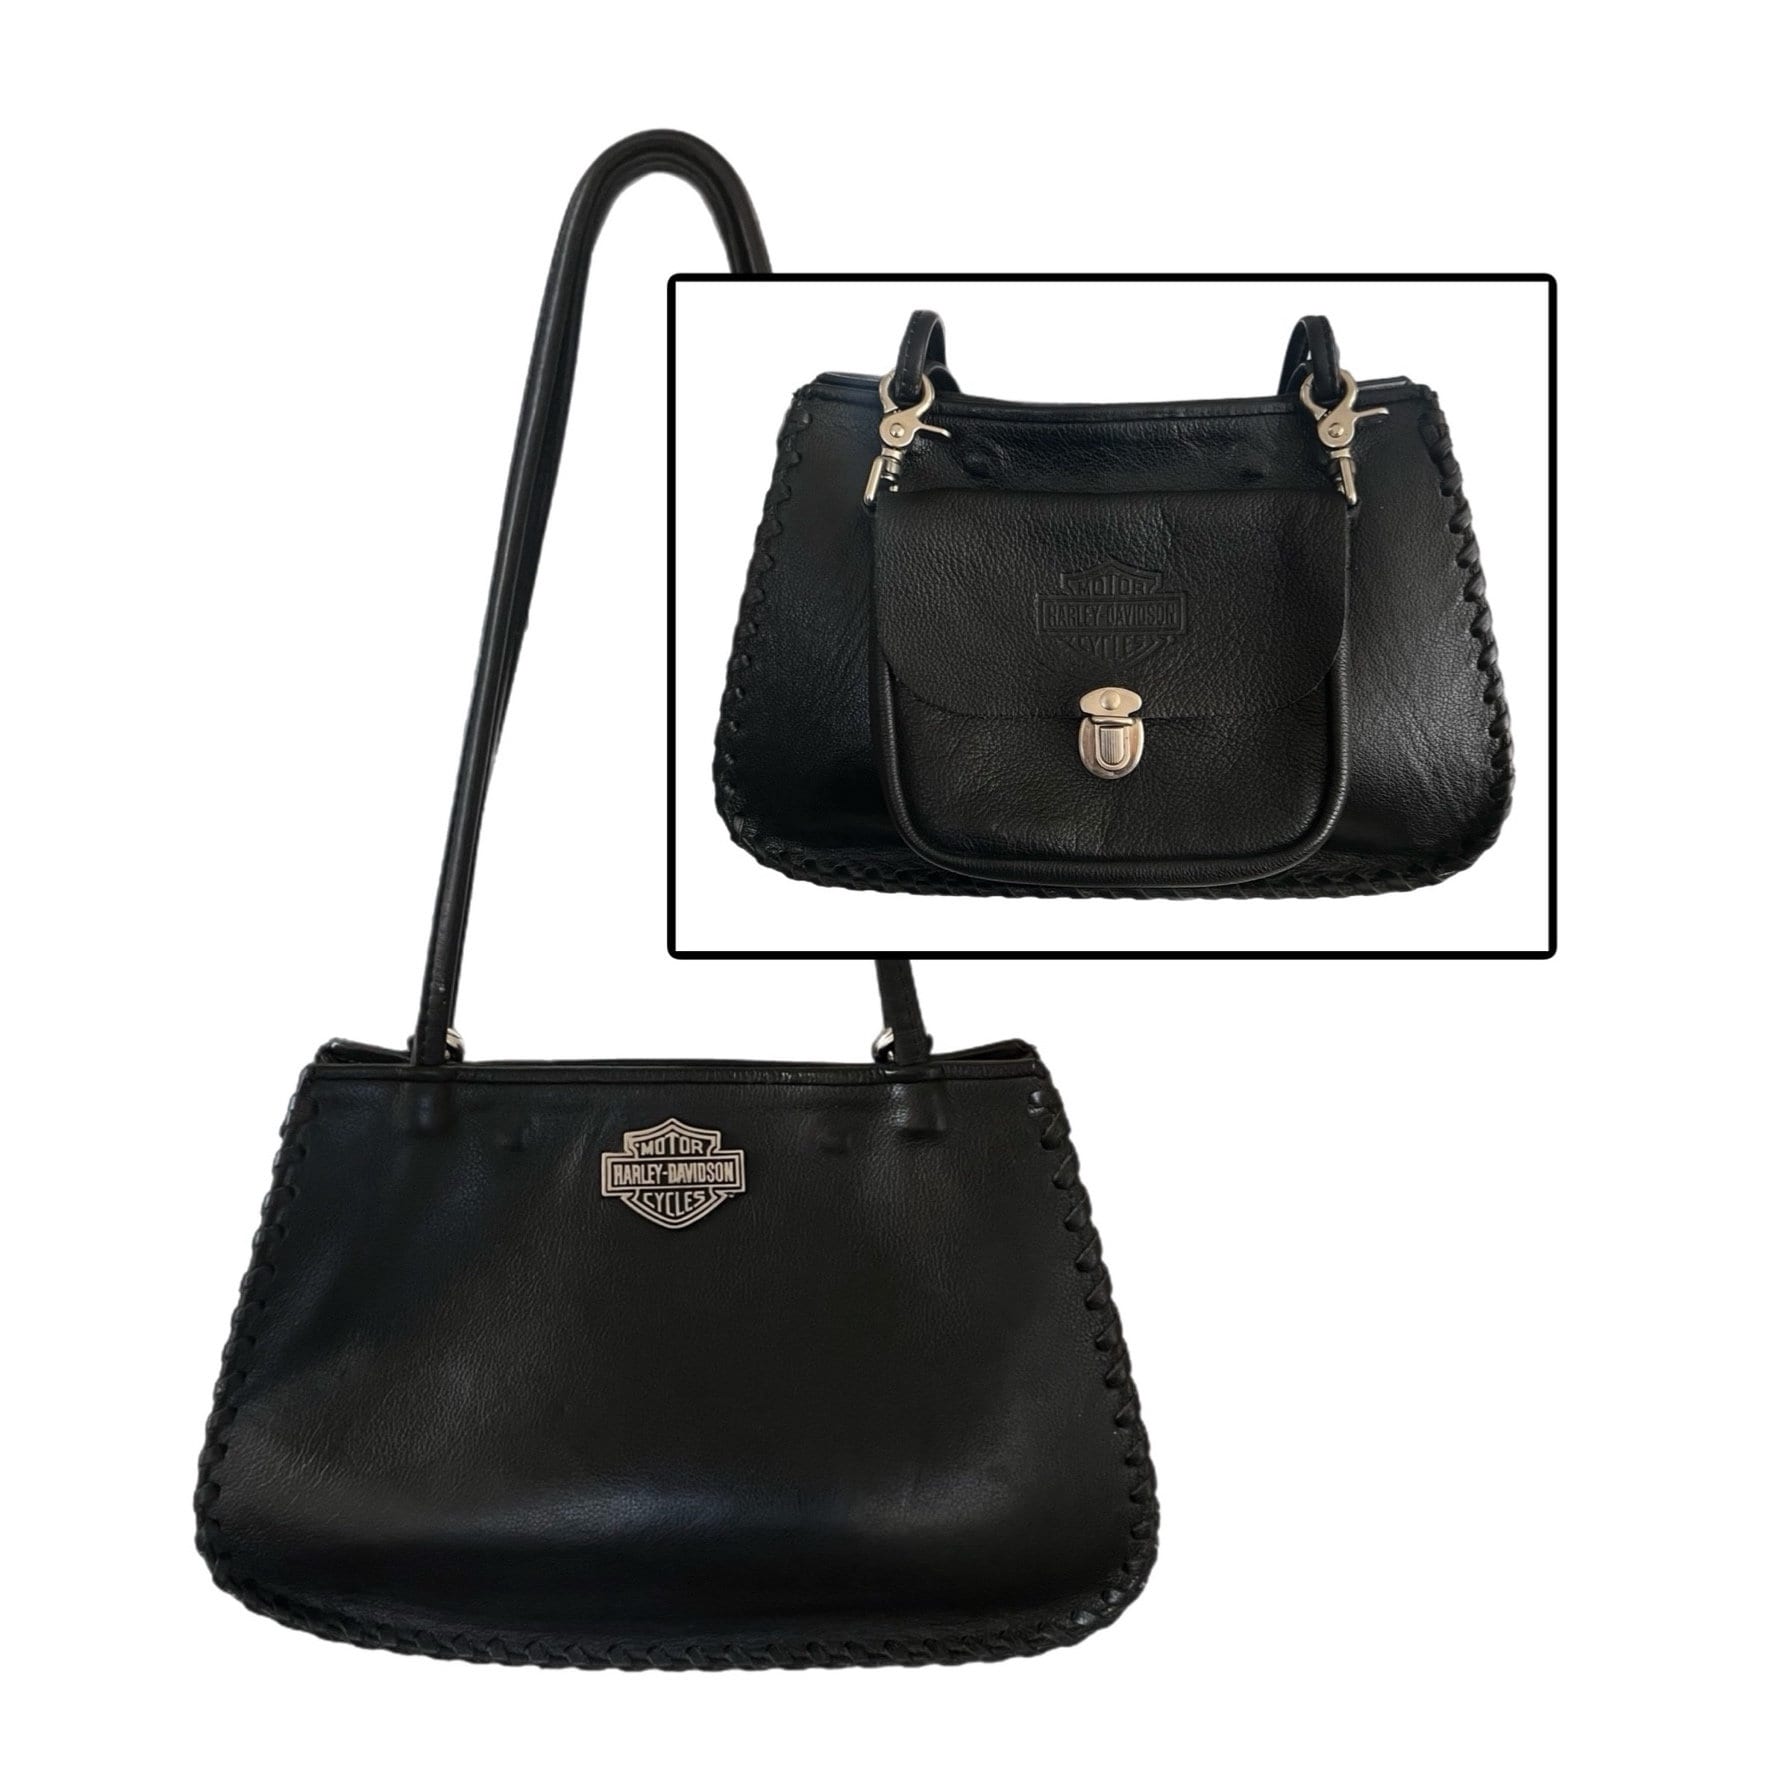 harley davidson fringe purse products for sale | eBay